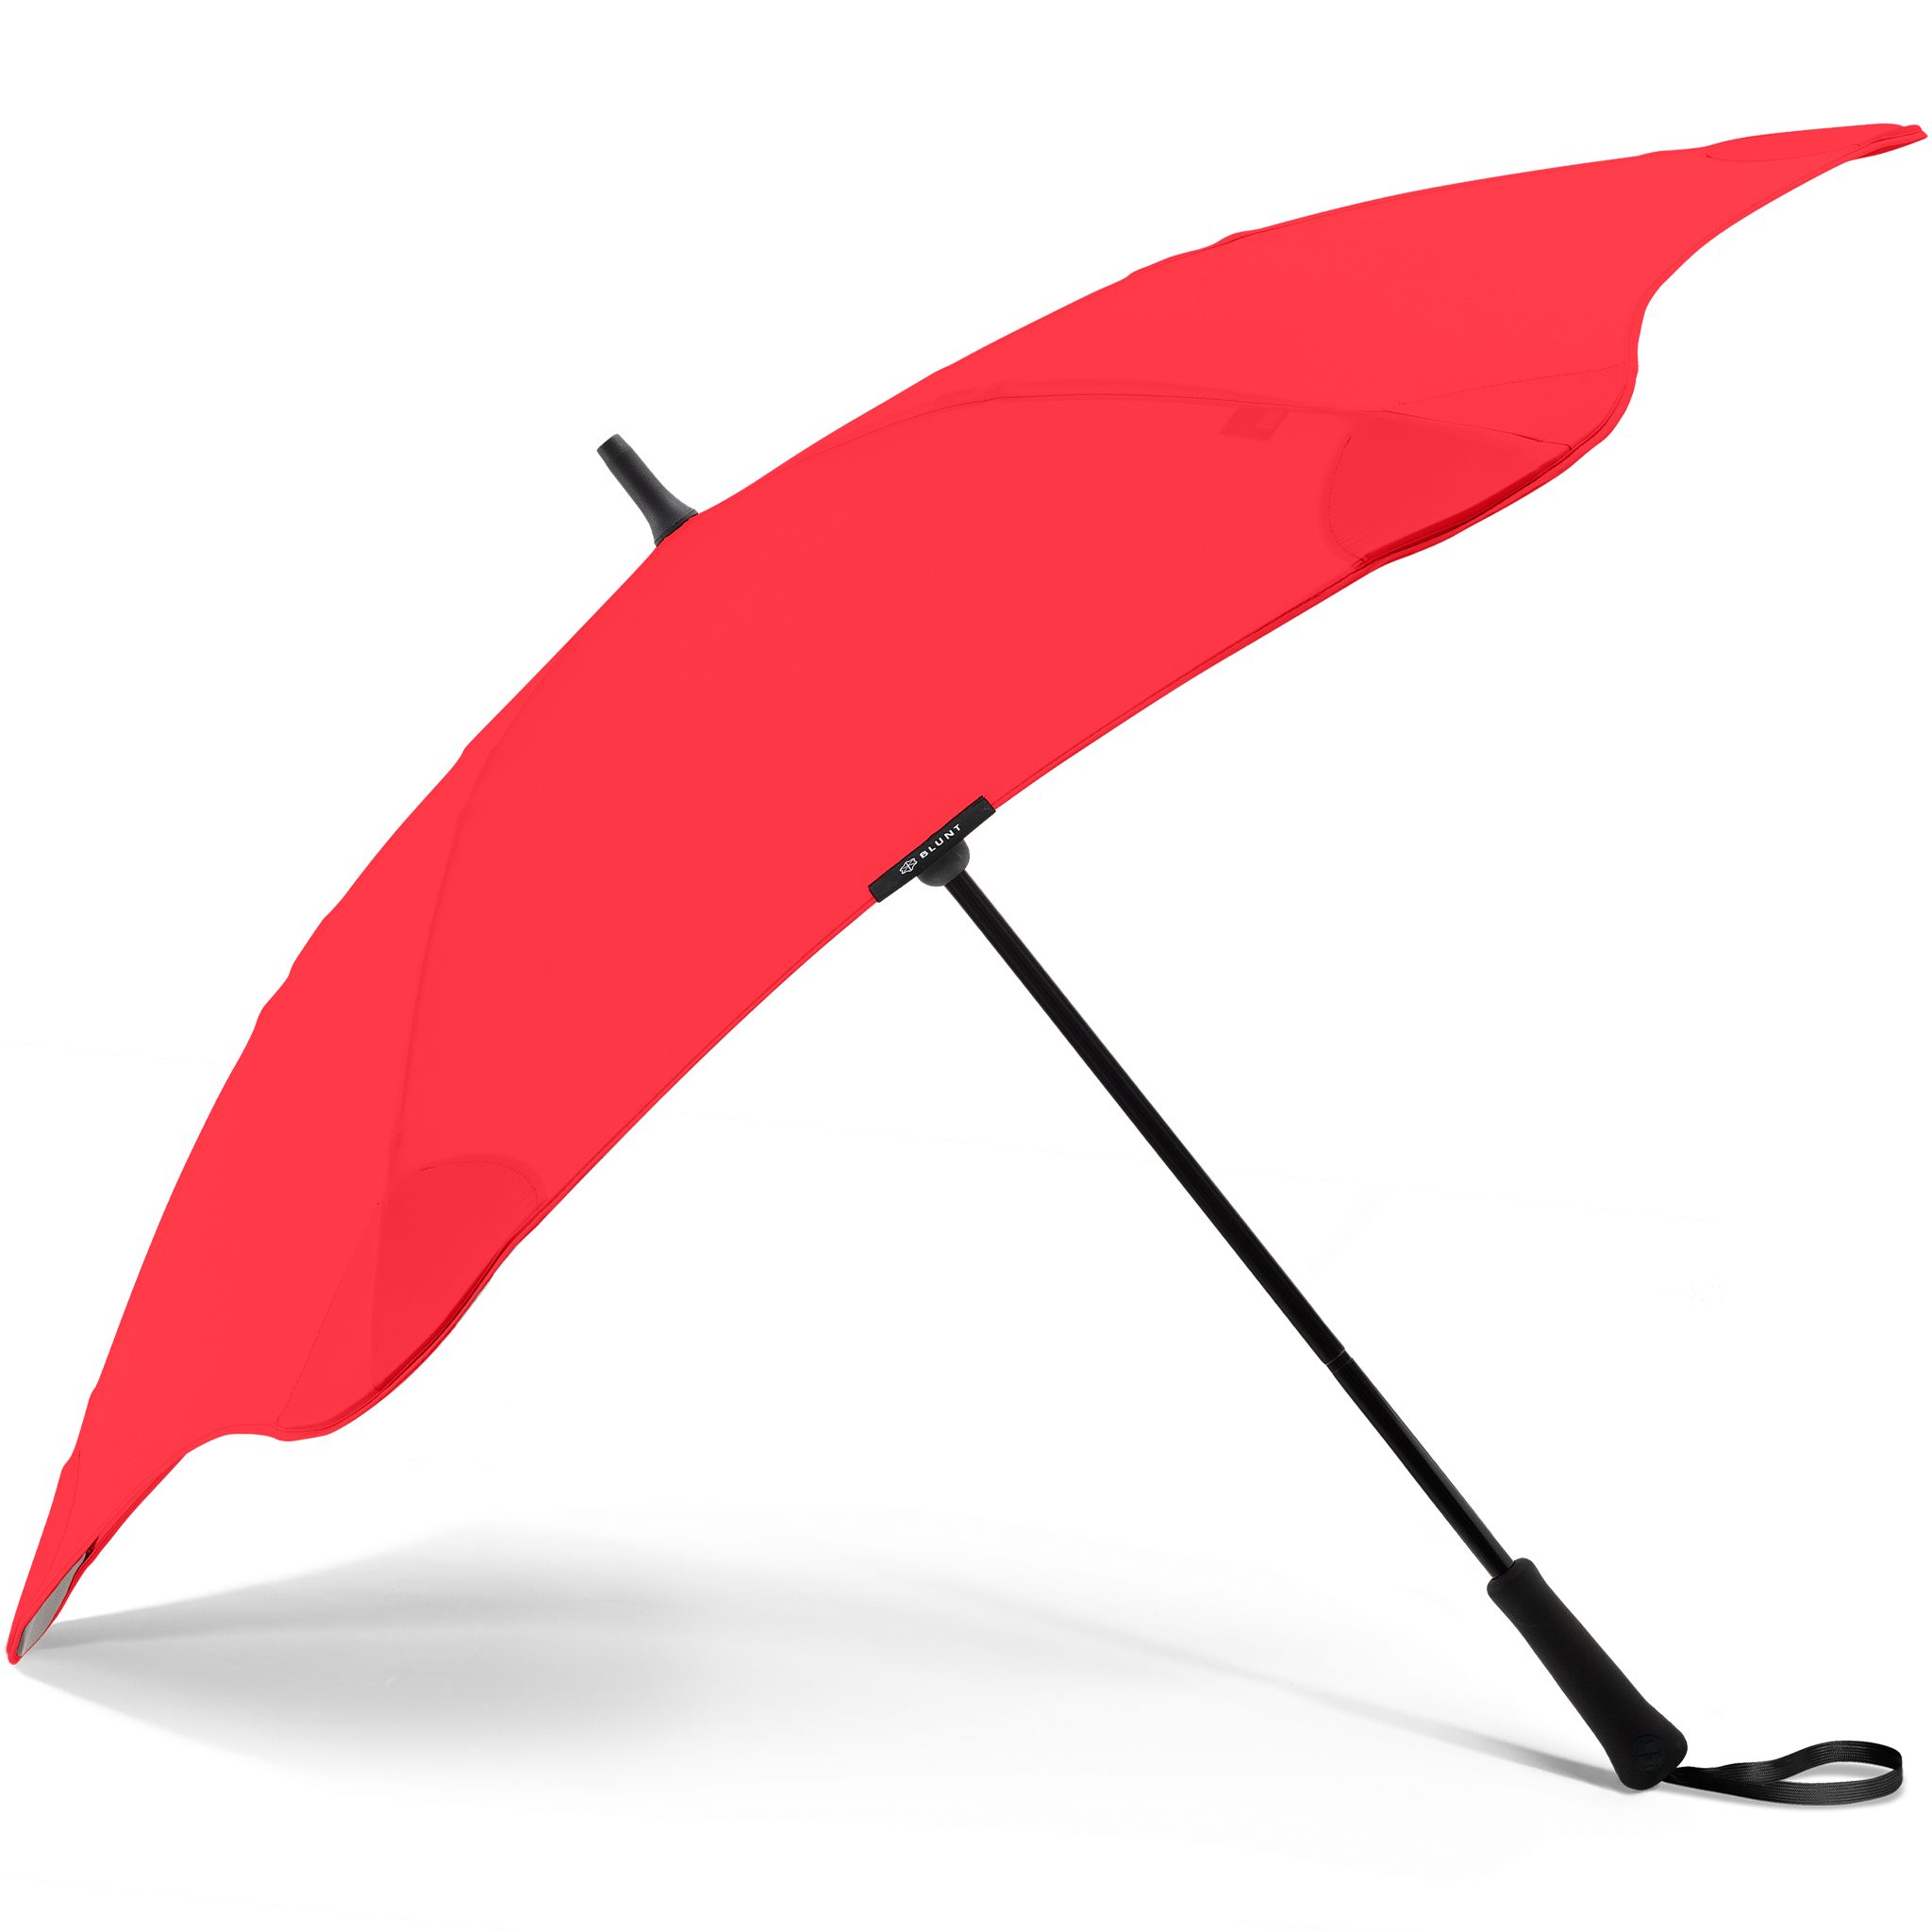 Technologie, Stockregenschirm Blunt einzigartige rot herausragende patentierte Classic, Silhouette